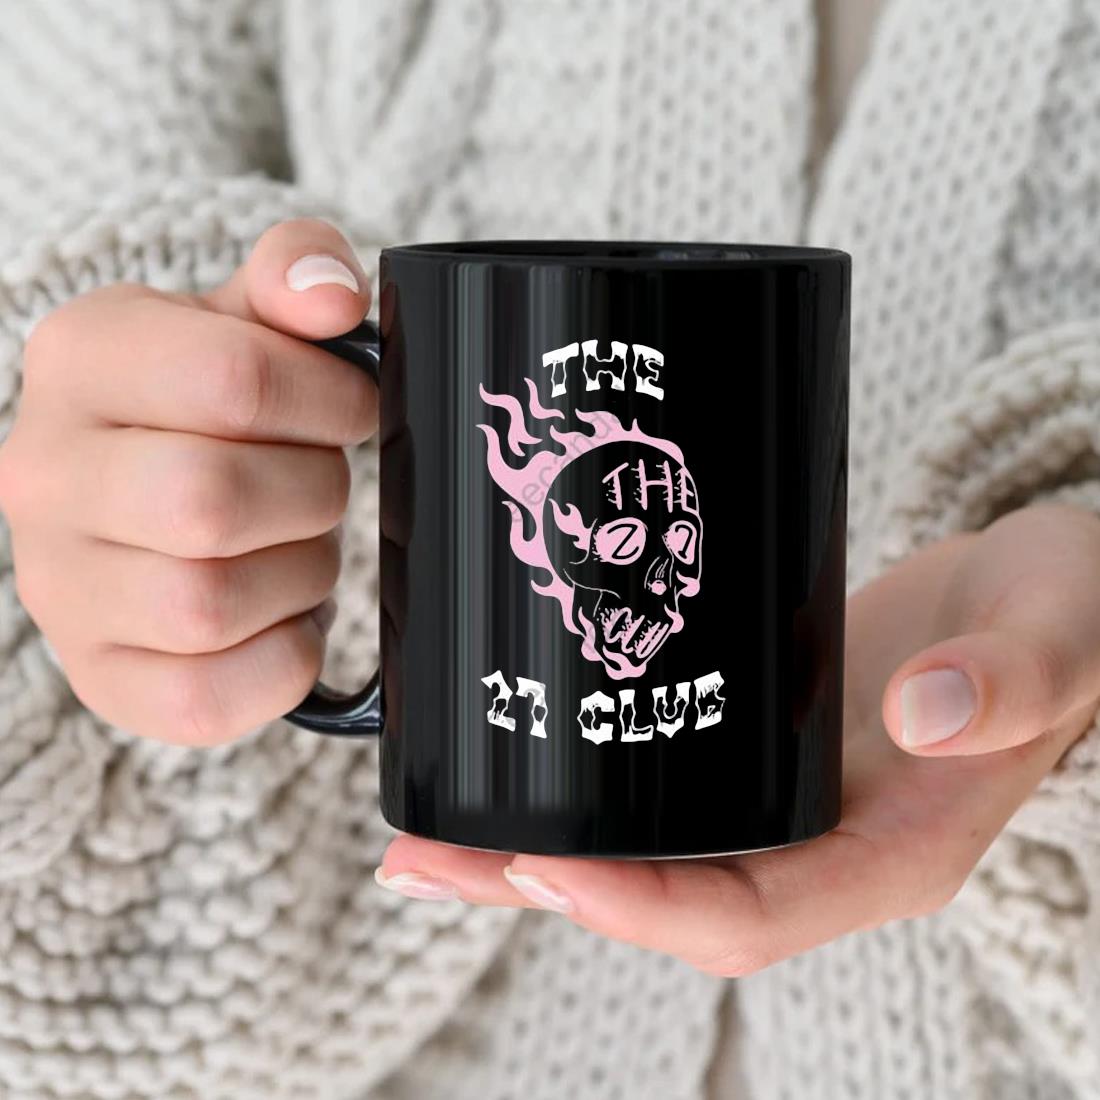 The 27 Club Coffee Mug